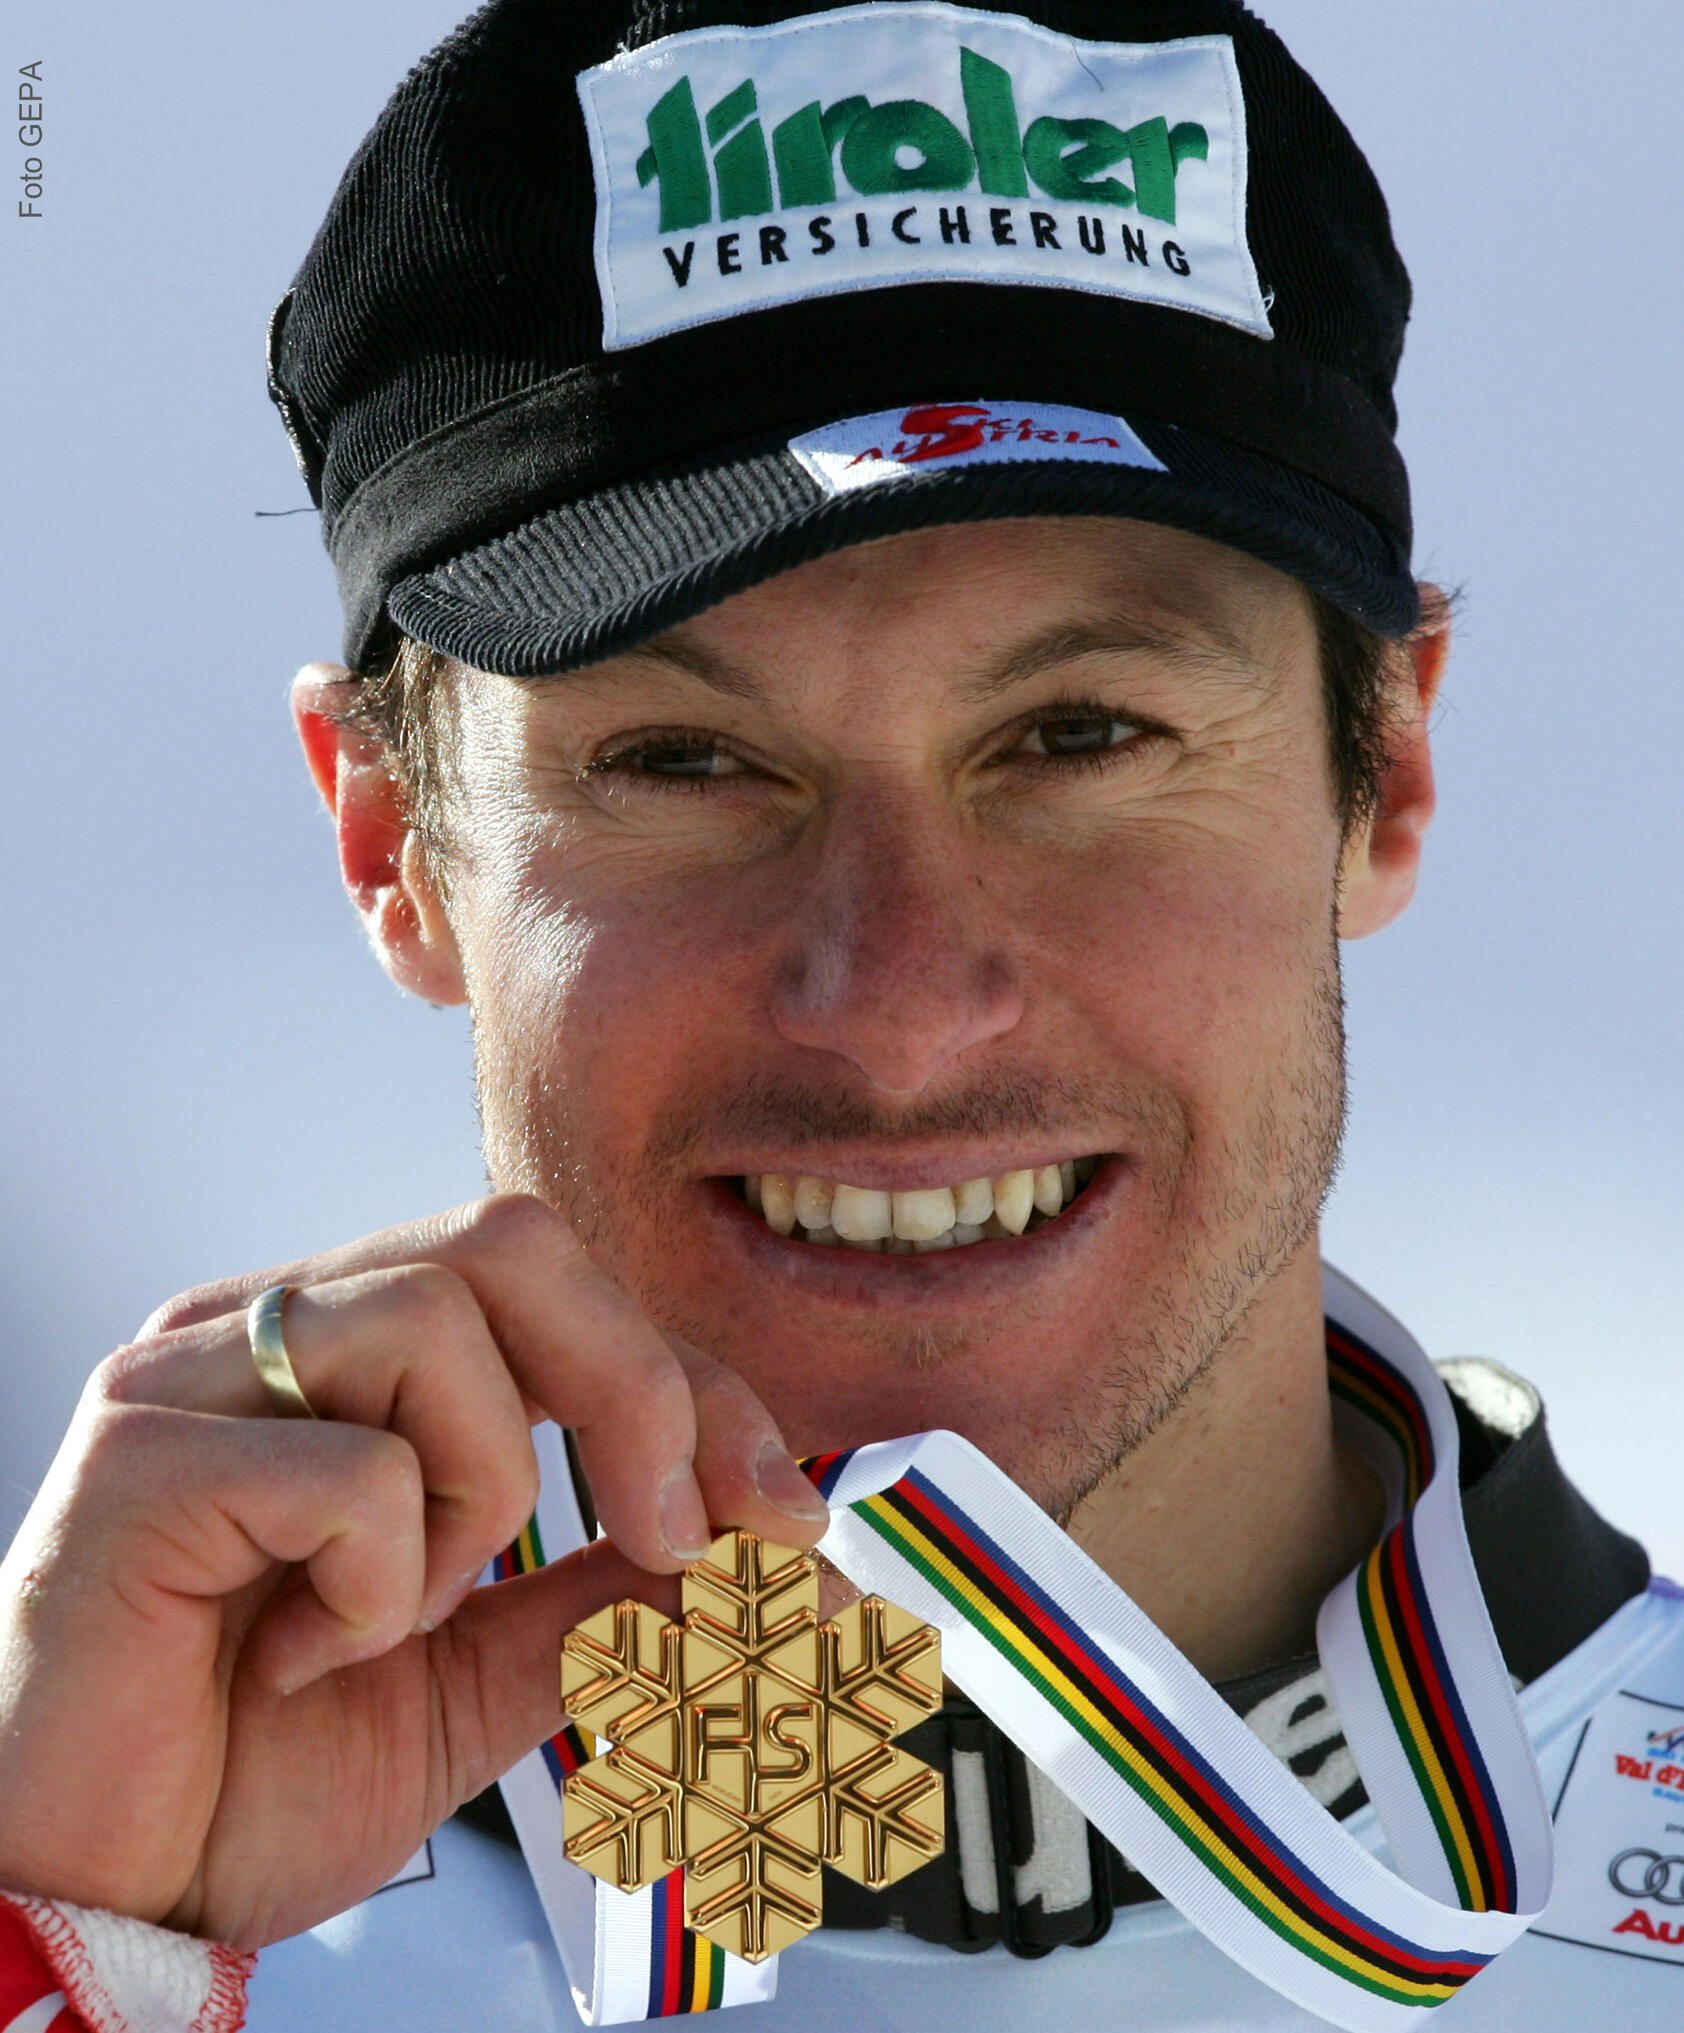 Slalomweltmeister Manfred Pranger